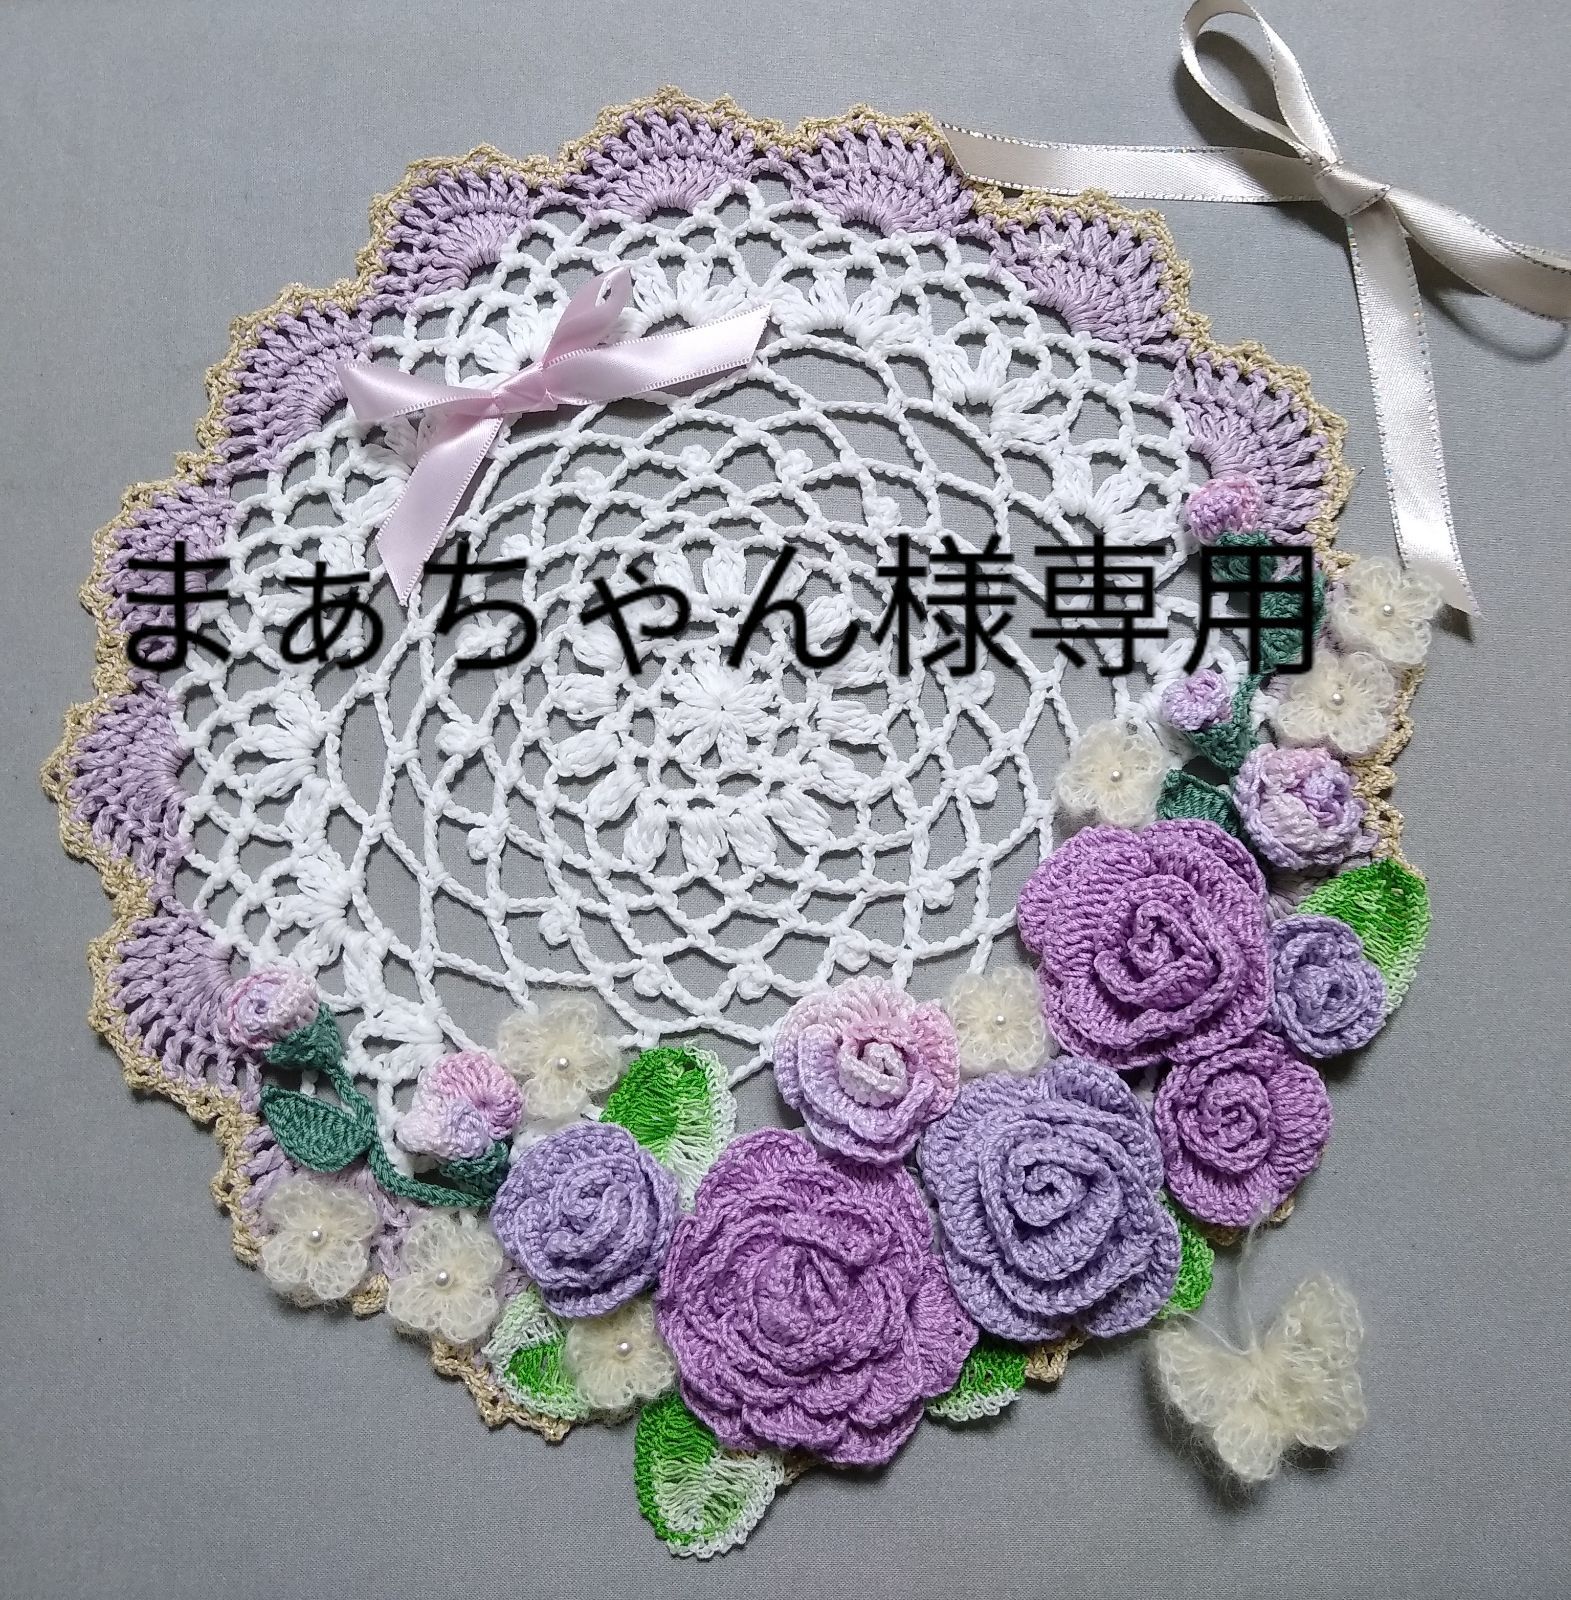 まぁちゃん様専用☆ドイリー 紫の誘惑 ハンドメイド レース編み - メルカリ